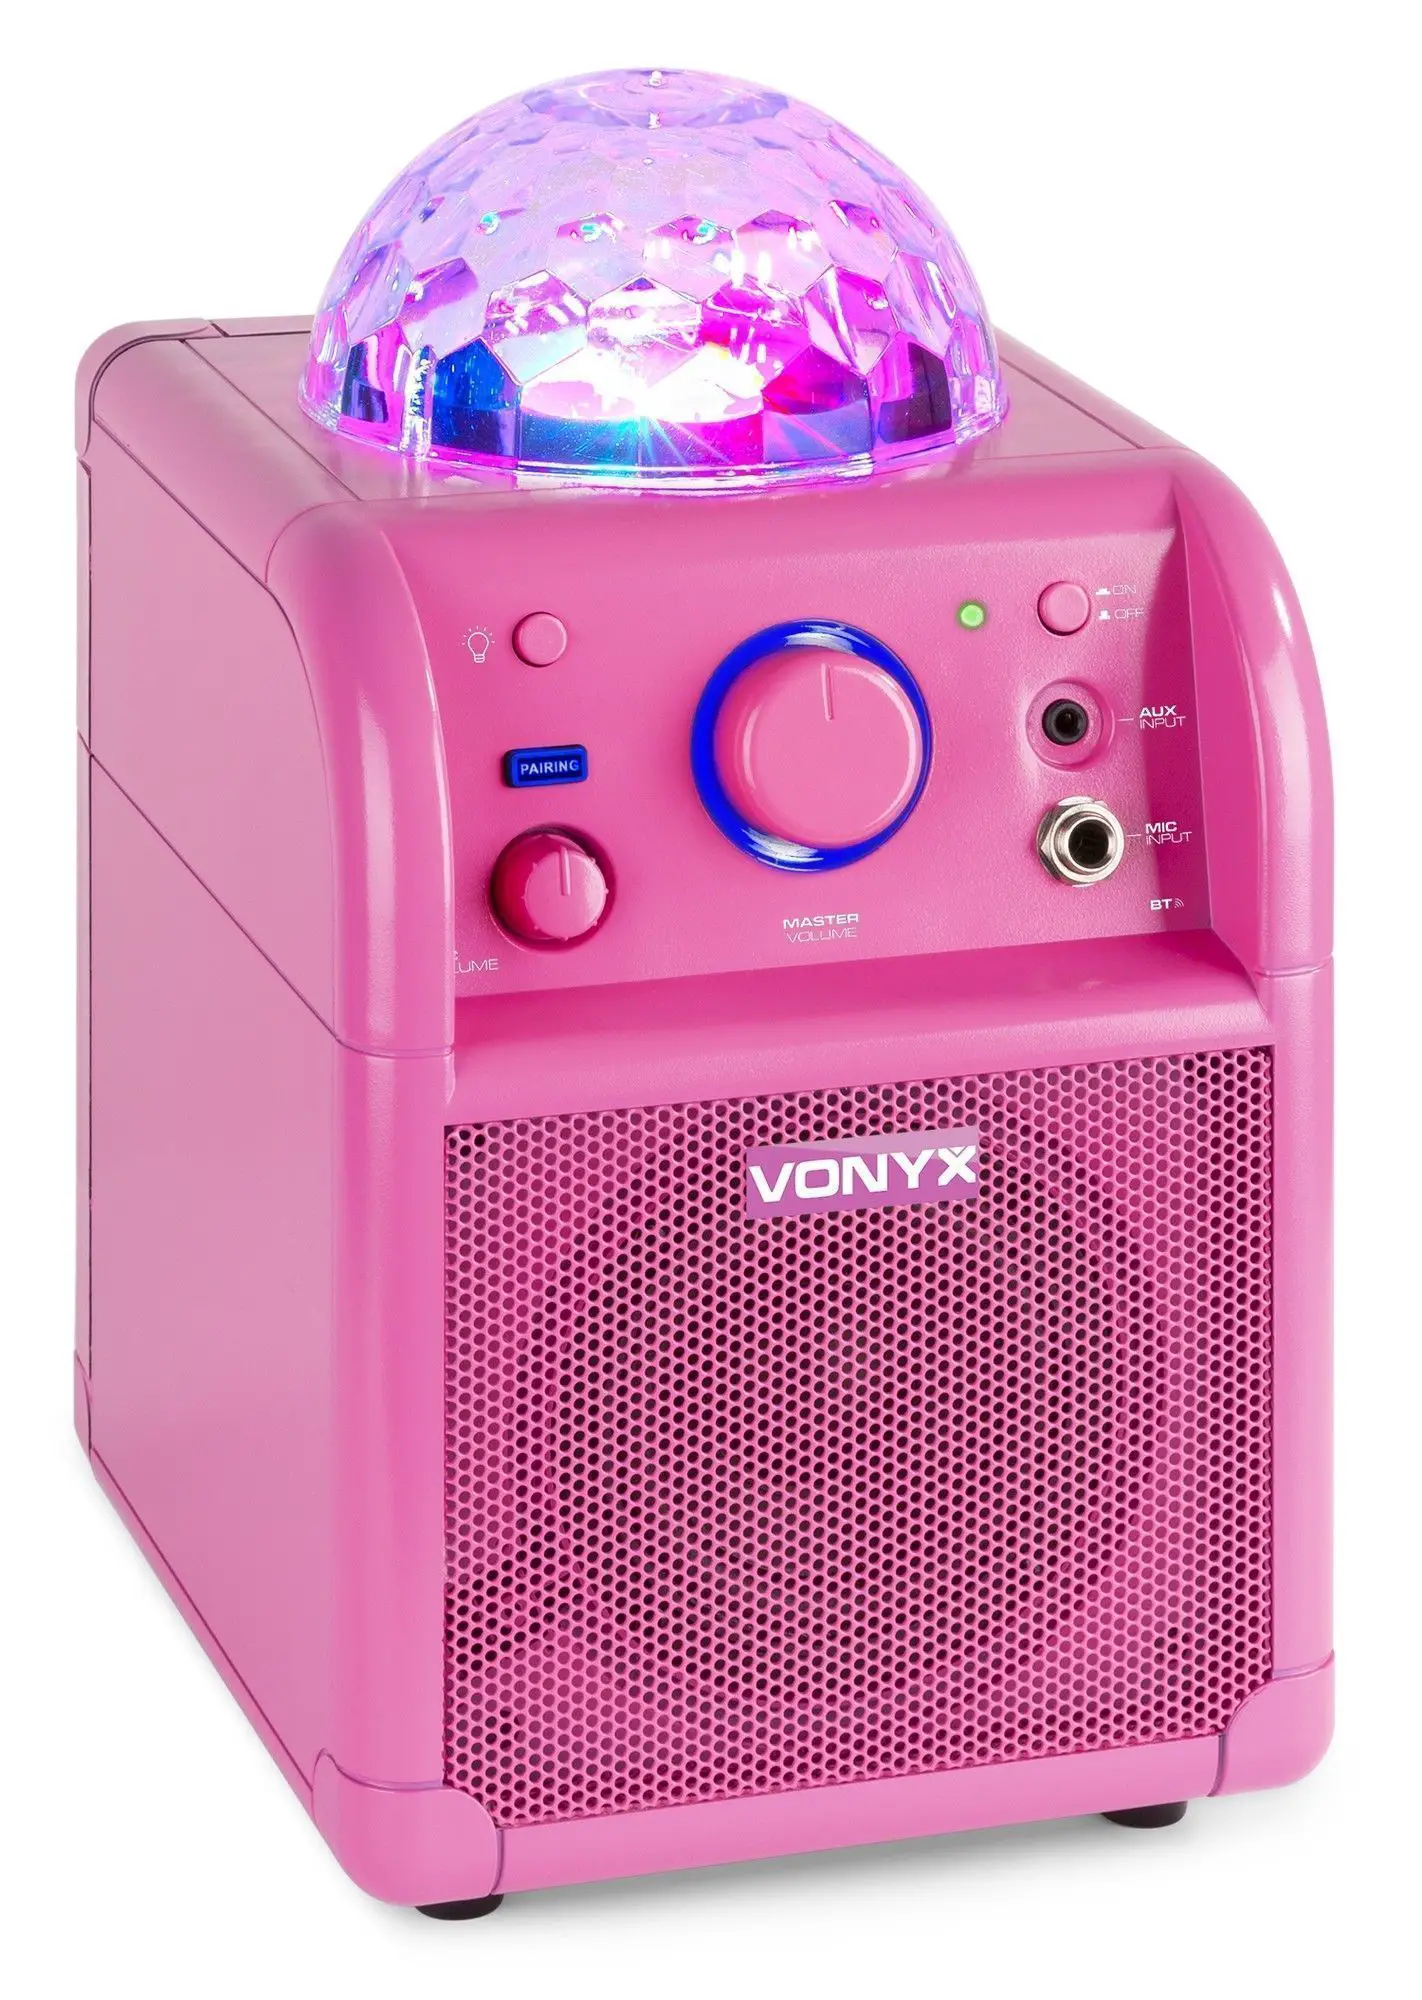 Vonyx retourdeals karaokesets|retourdeals karaoke microfoons|retourdeals actieve speakers|retourdeals complete geluidsinstallaties|retourdeals mobiele geluidsinstallaties|bluetooth speakers